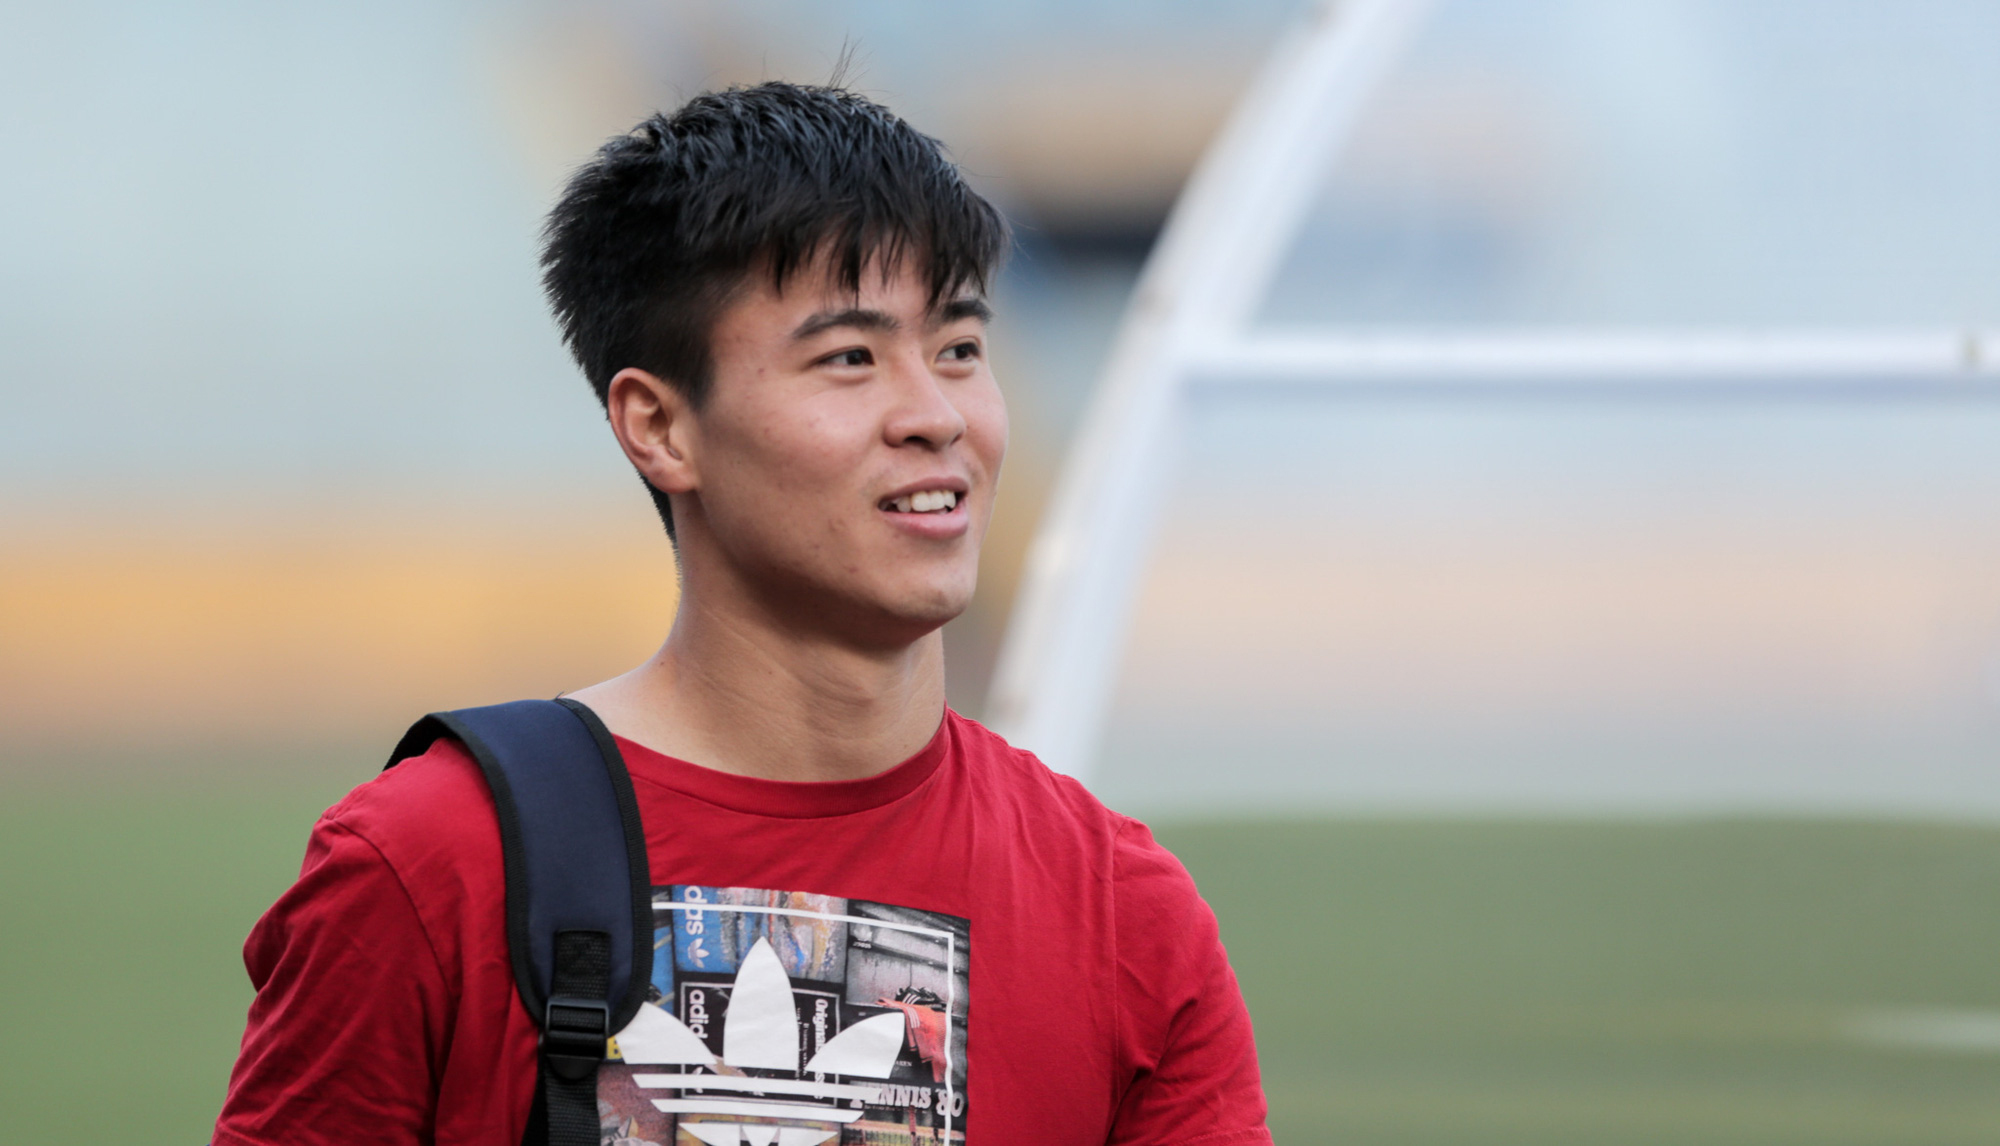 Quỳnh Anh thích thú khi fan khen cầu thủ Duy Mạnh và con trai